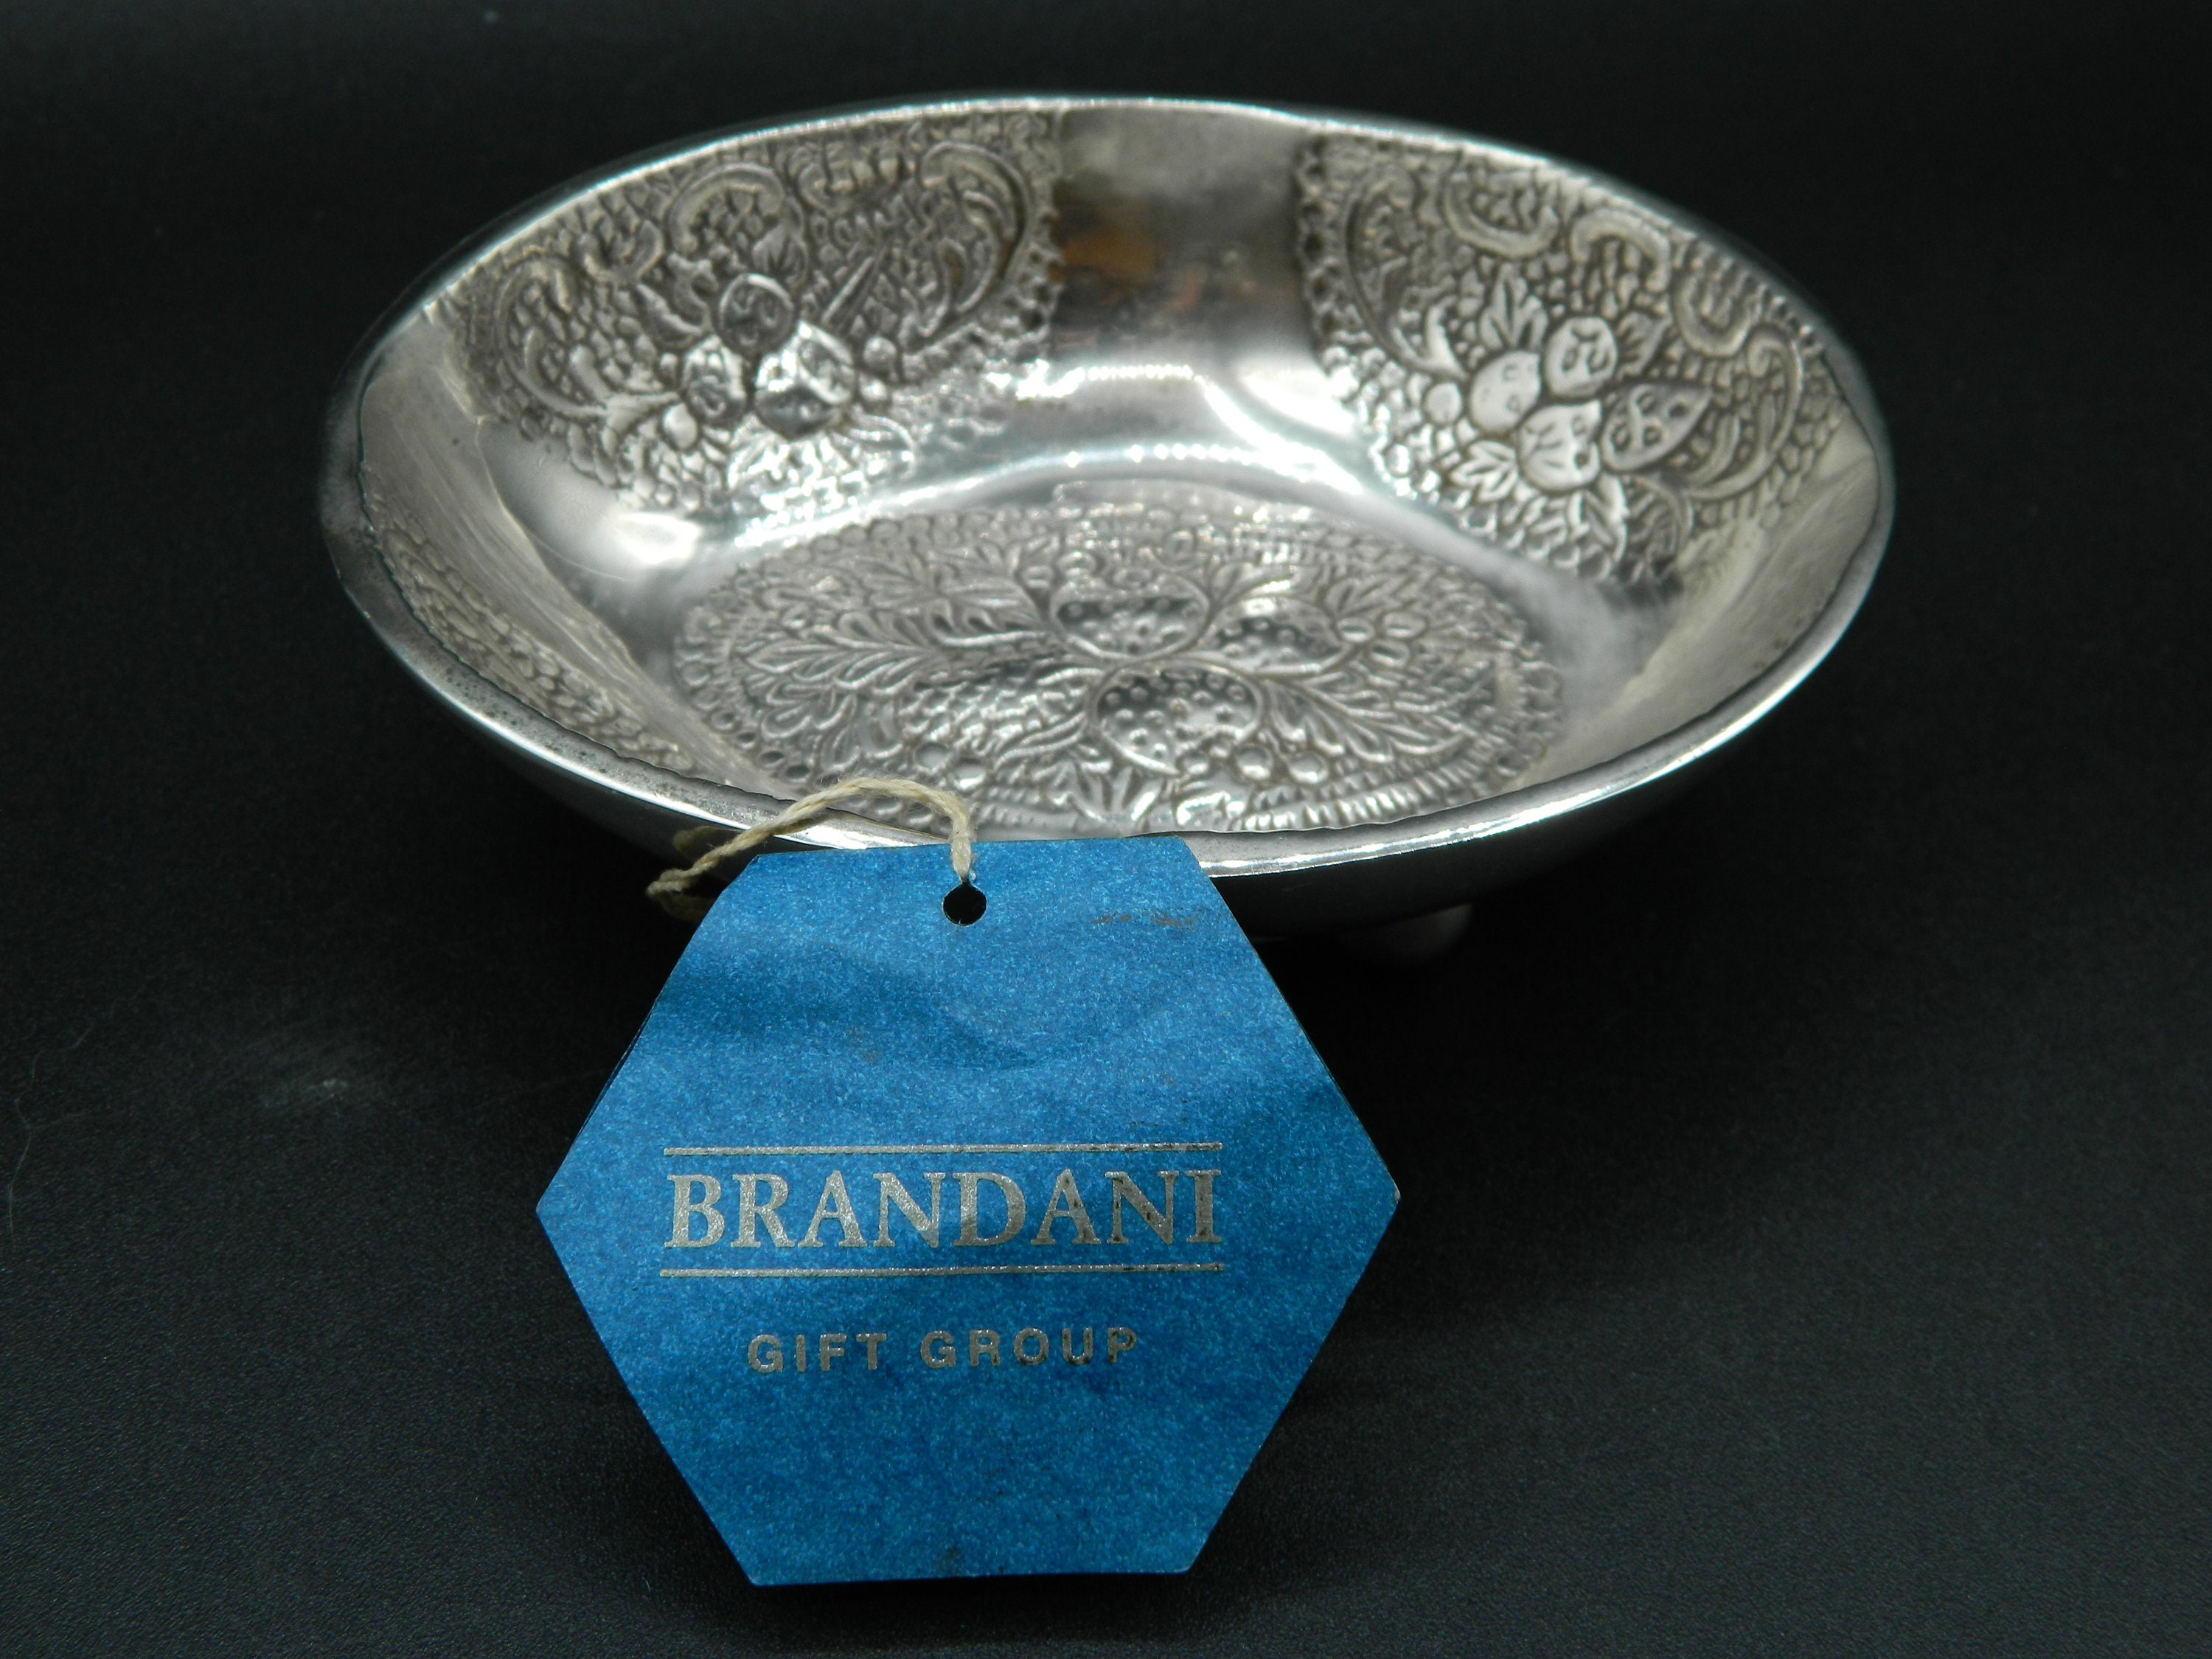 Brandani Gift Group added a new photo. - Brandani Gift Group